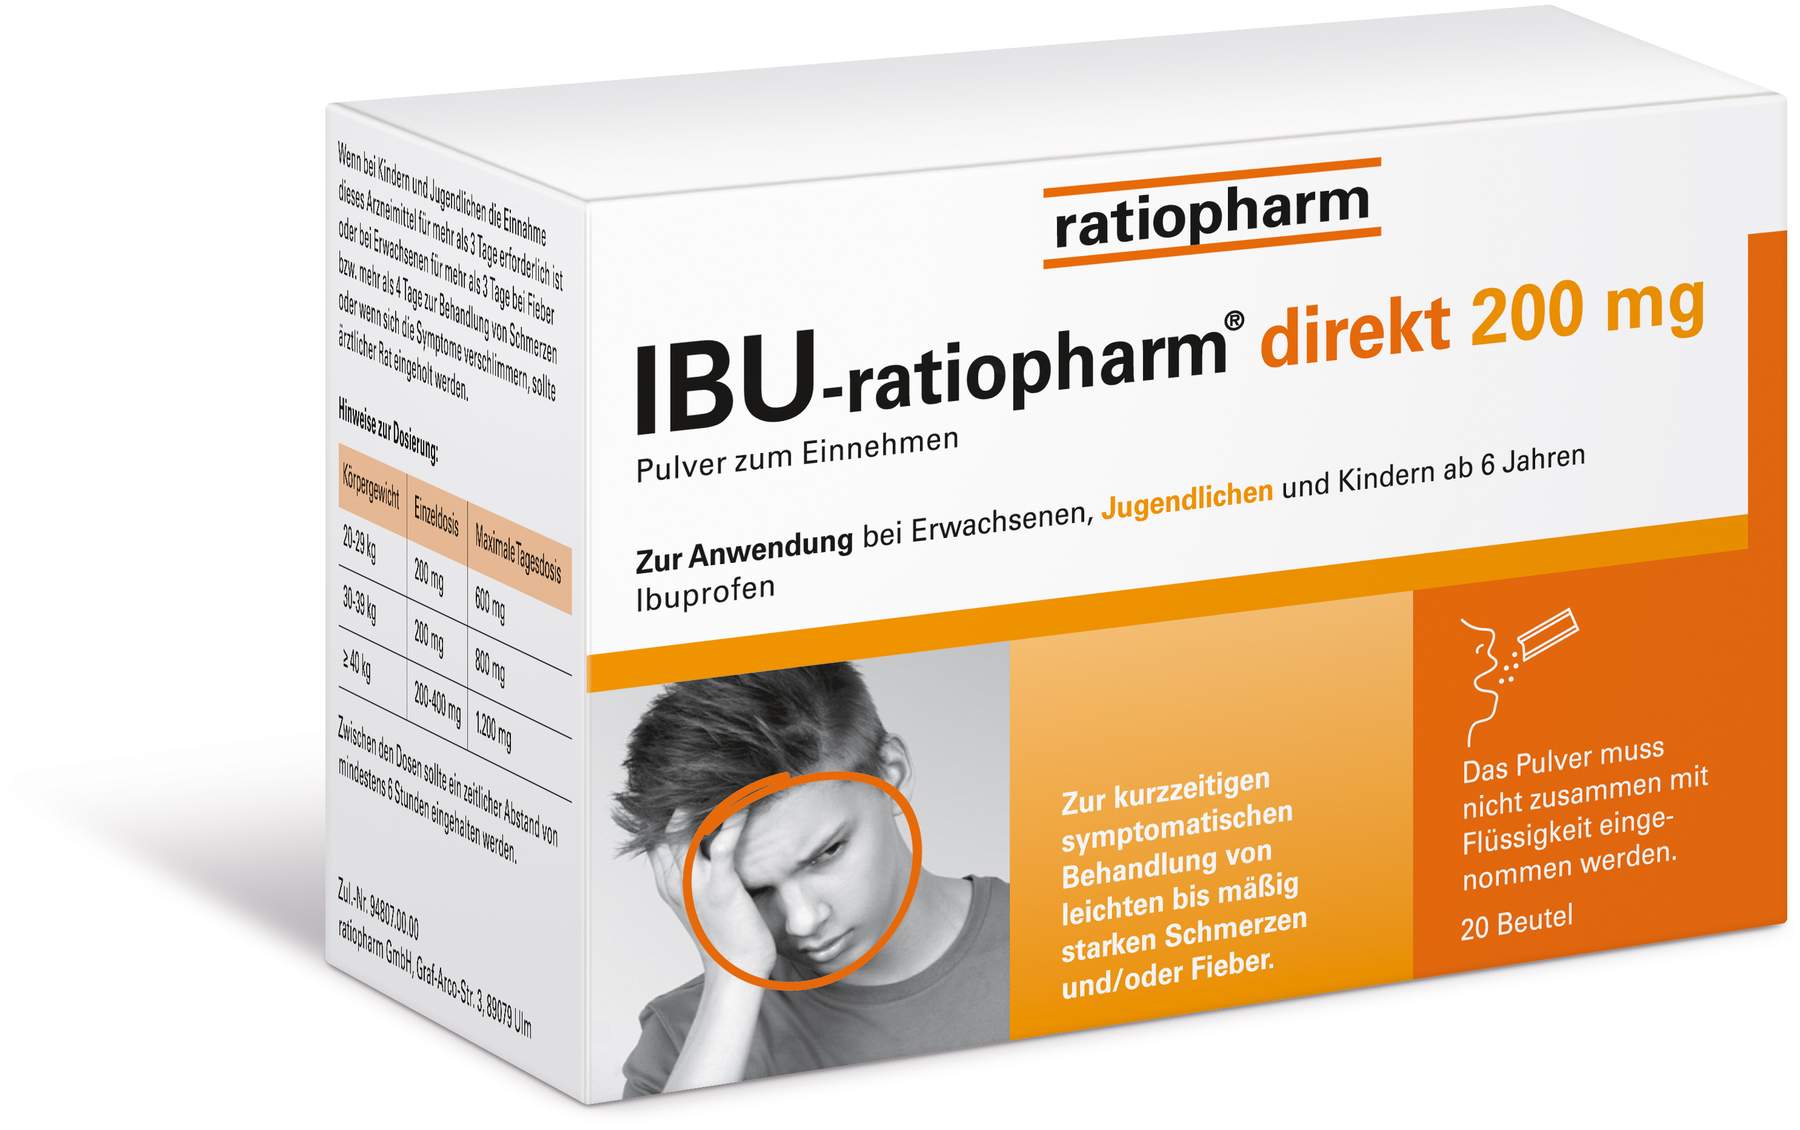 IBU ratiopharm direkt 200 mg Pulver zum Einnehmen 20 Beutel kaufen Volksver...